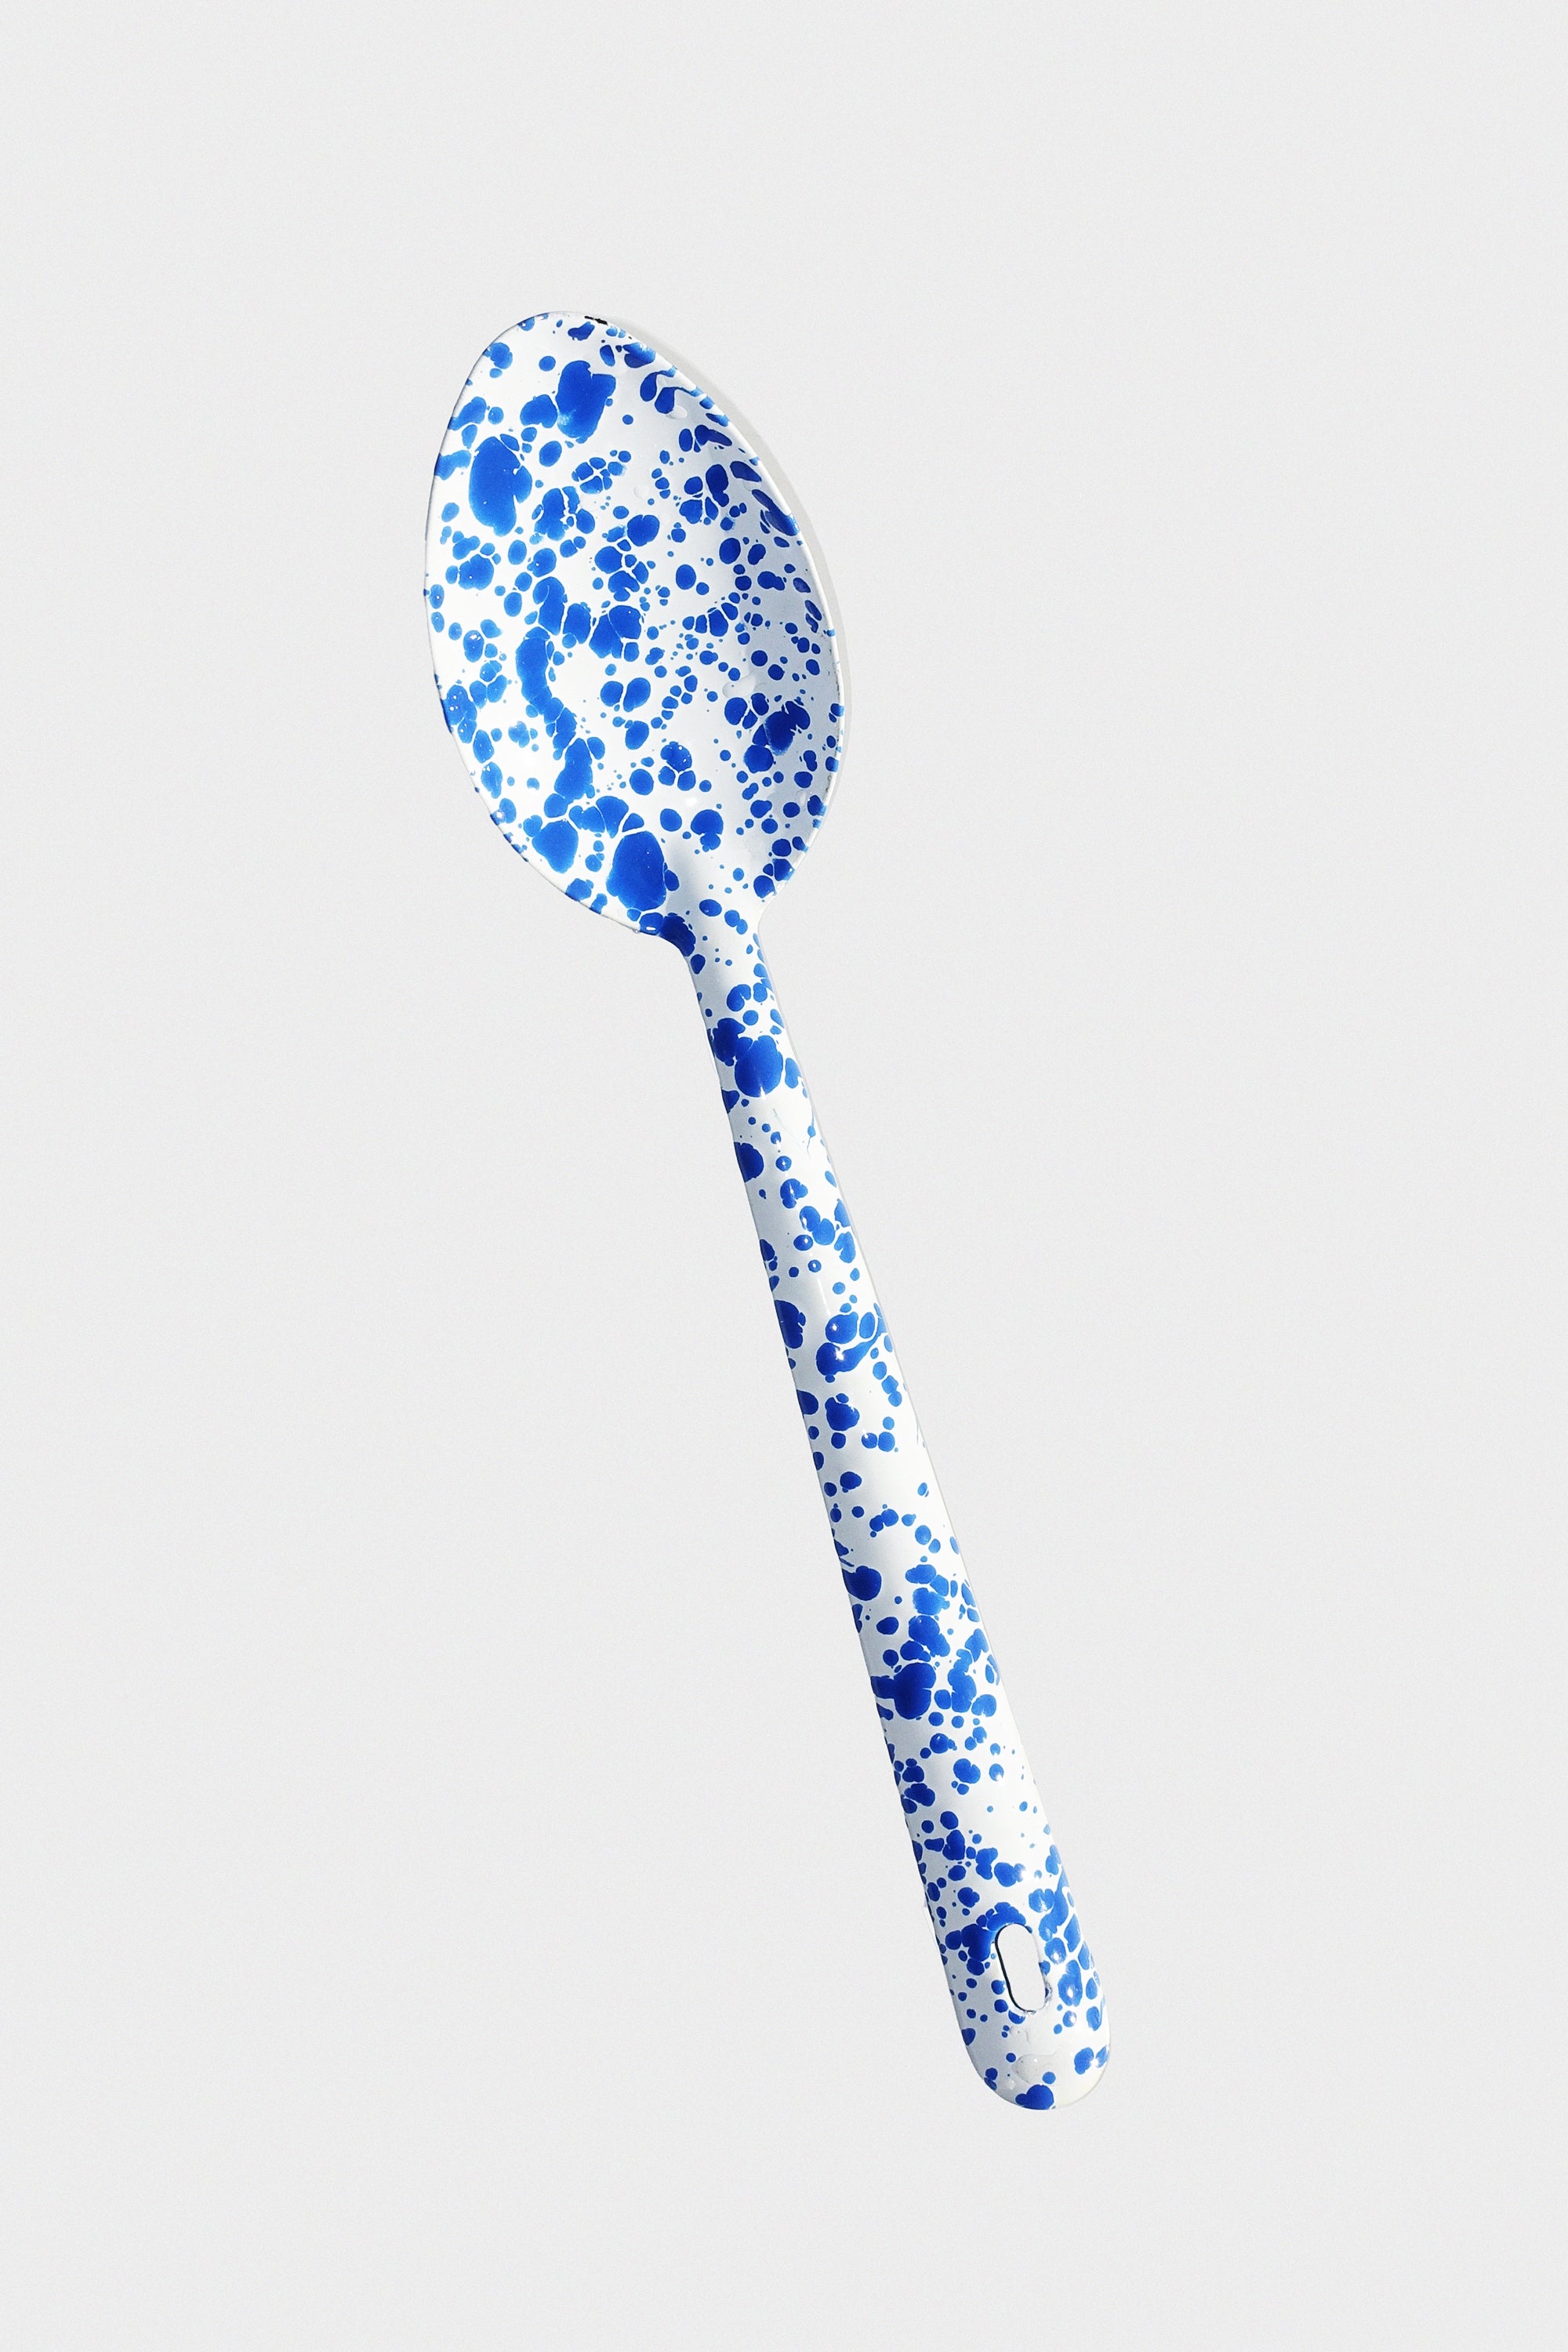 Large Spoon in Blue Splatter